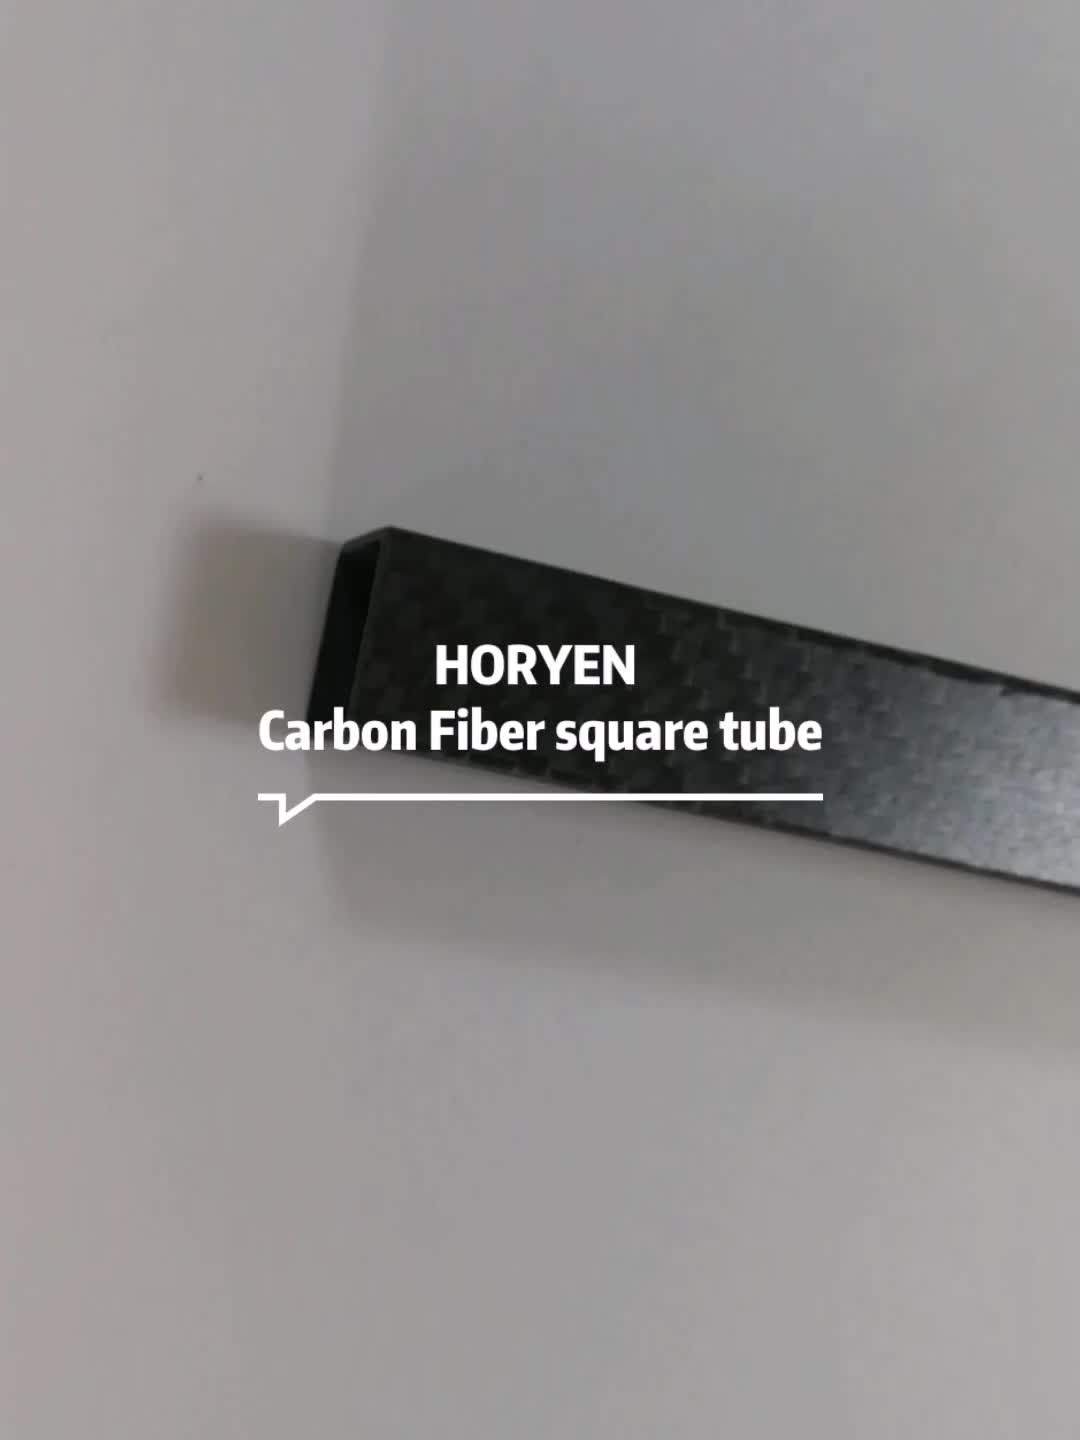 Horyen оптовая индивидуальная продукция из углеродного волокна углеродное волокно.